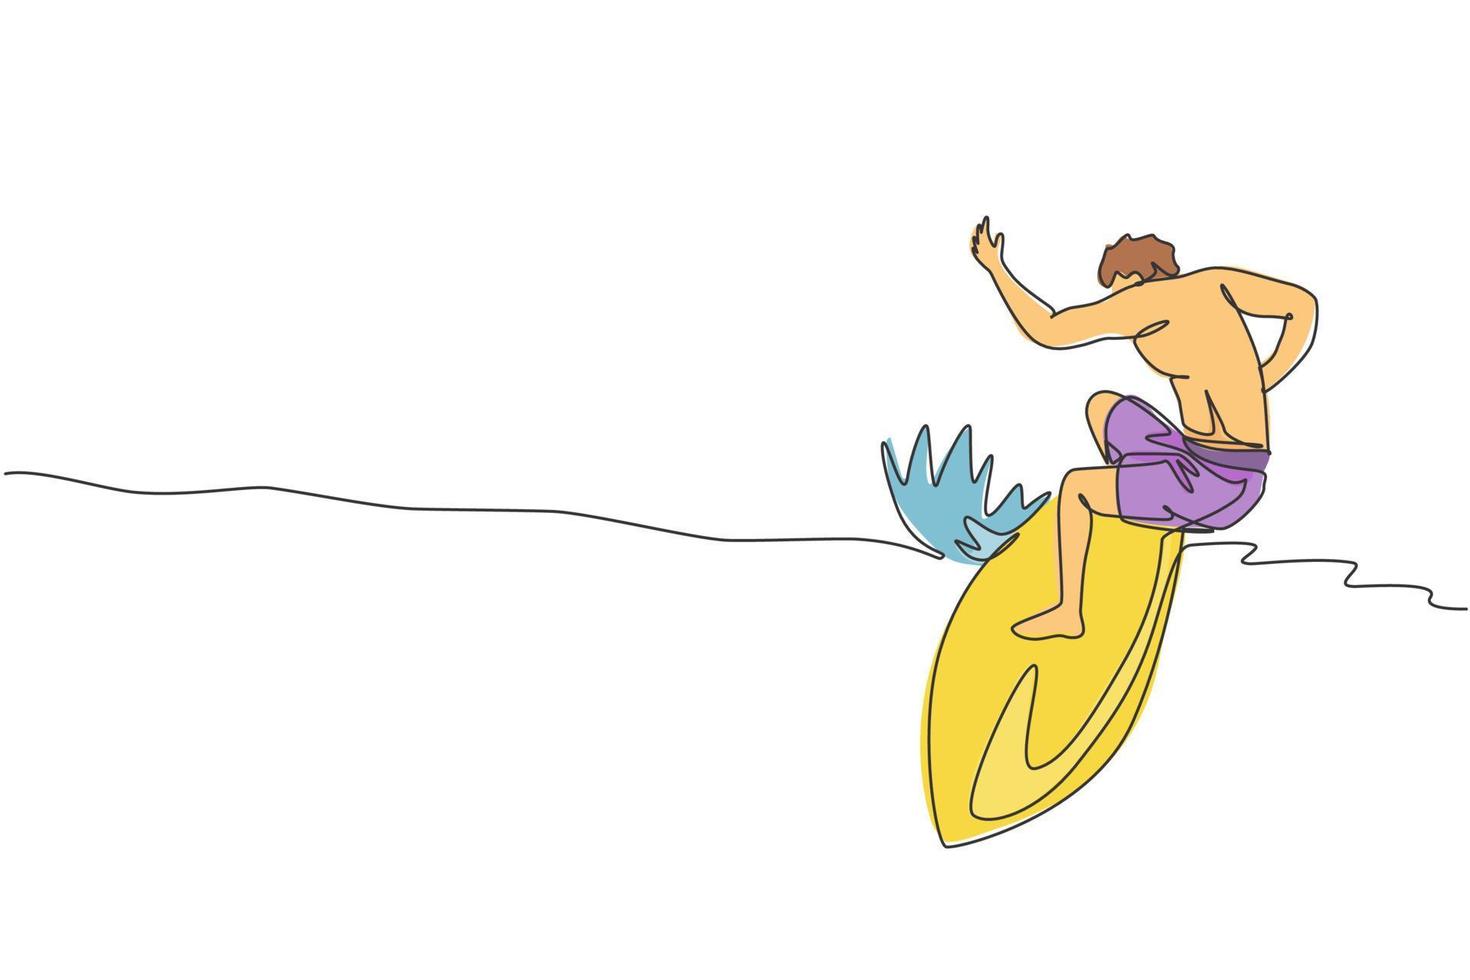 um único desenho de linha do jovem surfista desportivo andando no barril de ondas grandes na ilustração vetorial de paraíso de praia de surf. conceito de estilo de vida de esportes aquáticos extremos. design moderno de desenho de linha contínua vetor